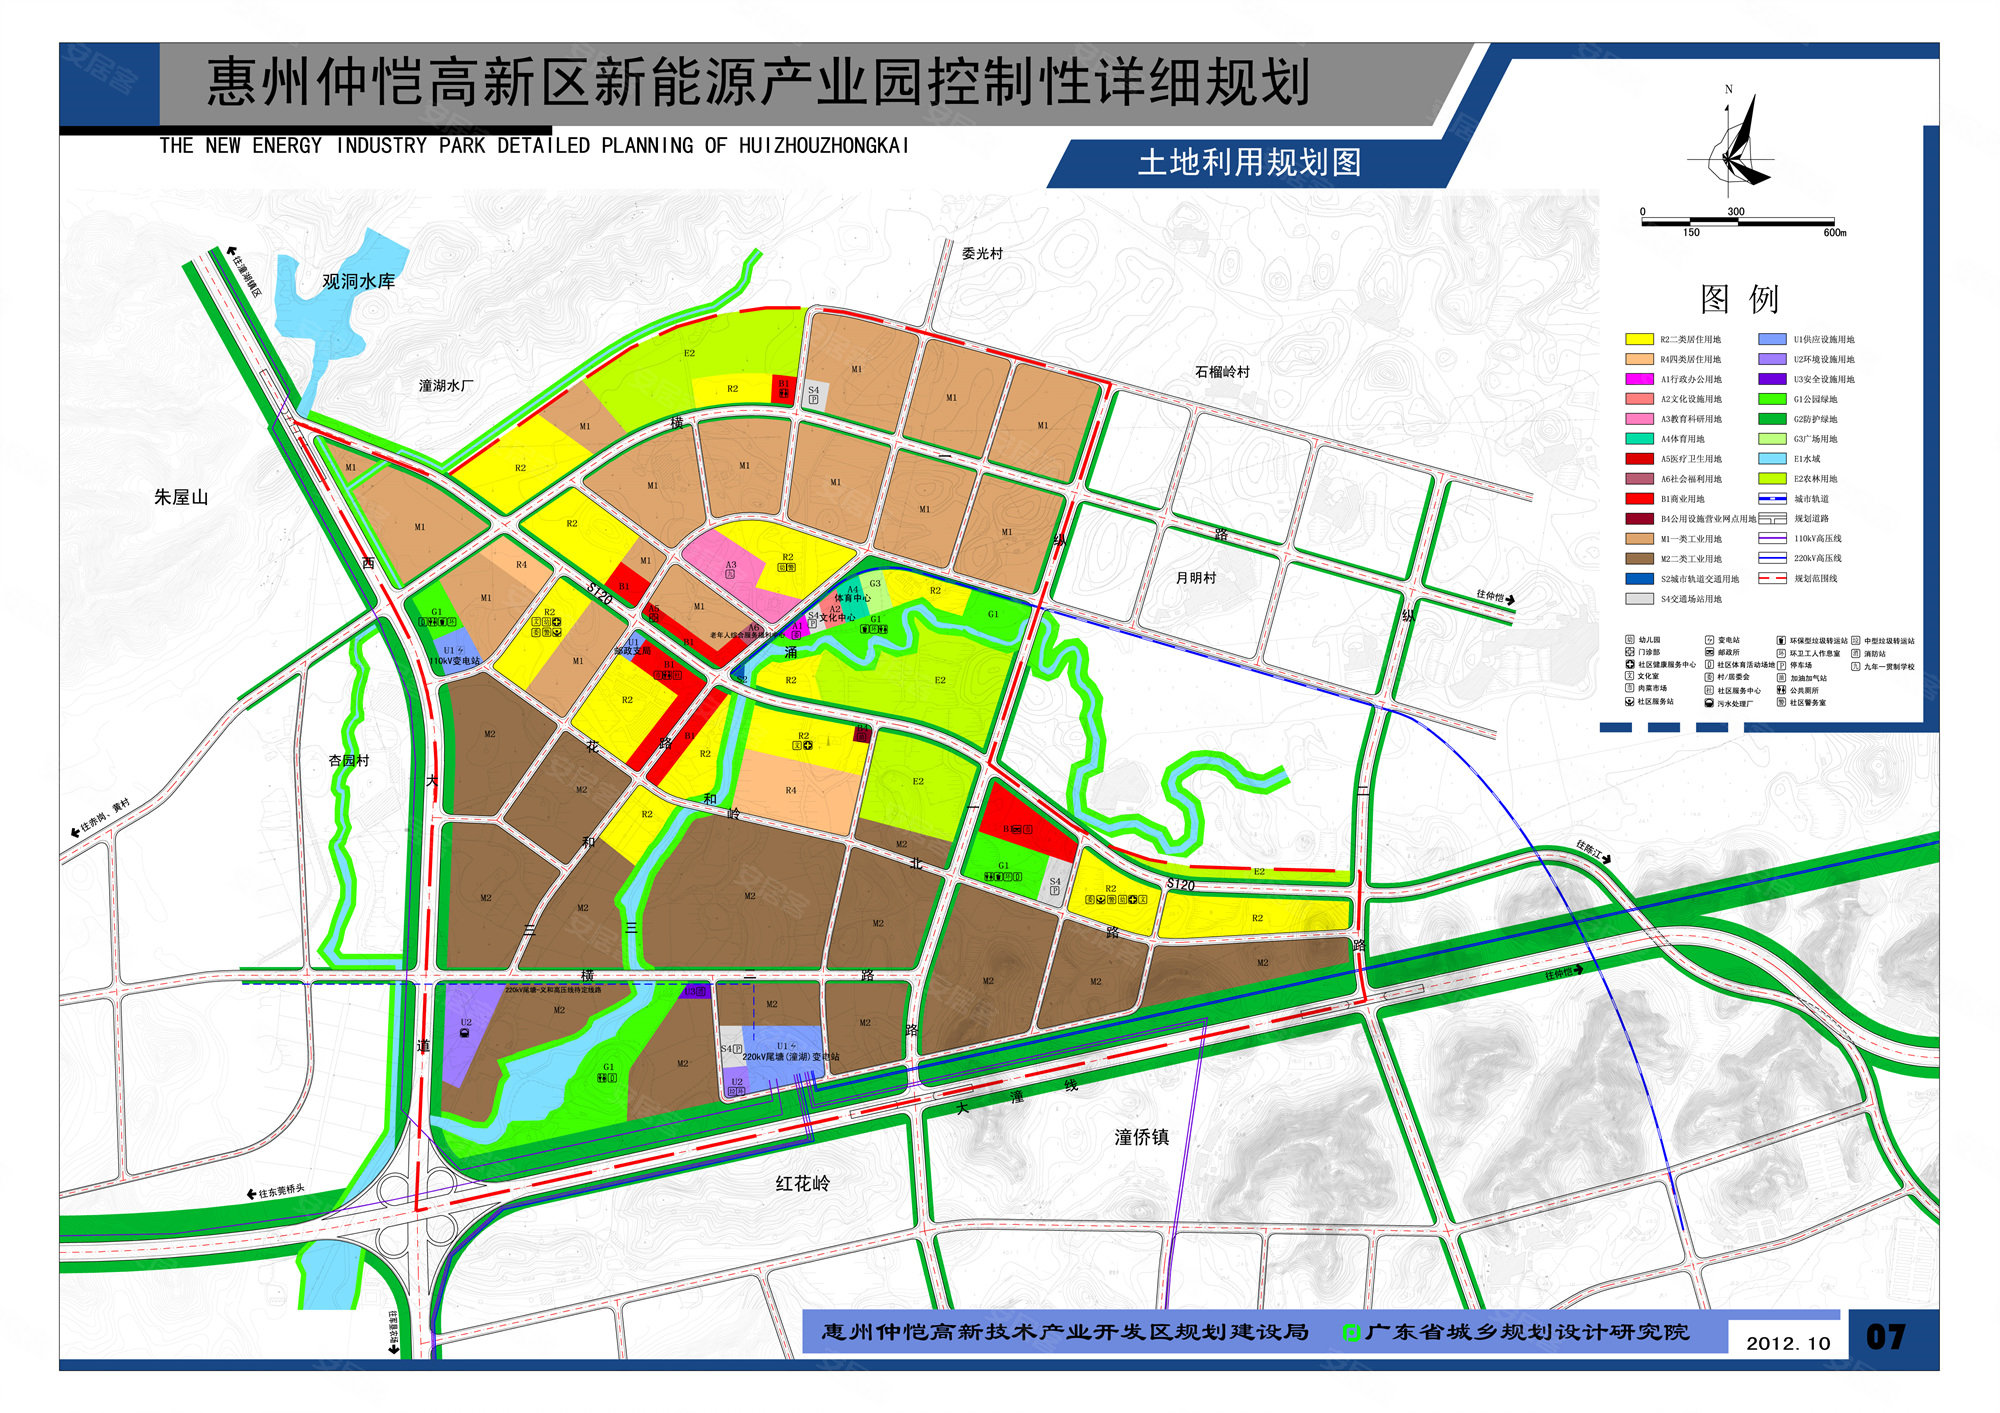 点击可查看大图    根据《惠州市仲恺地区分区规划(2007-2020)》